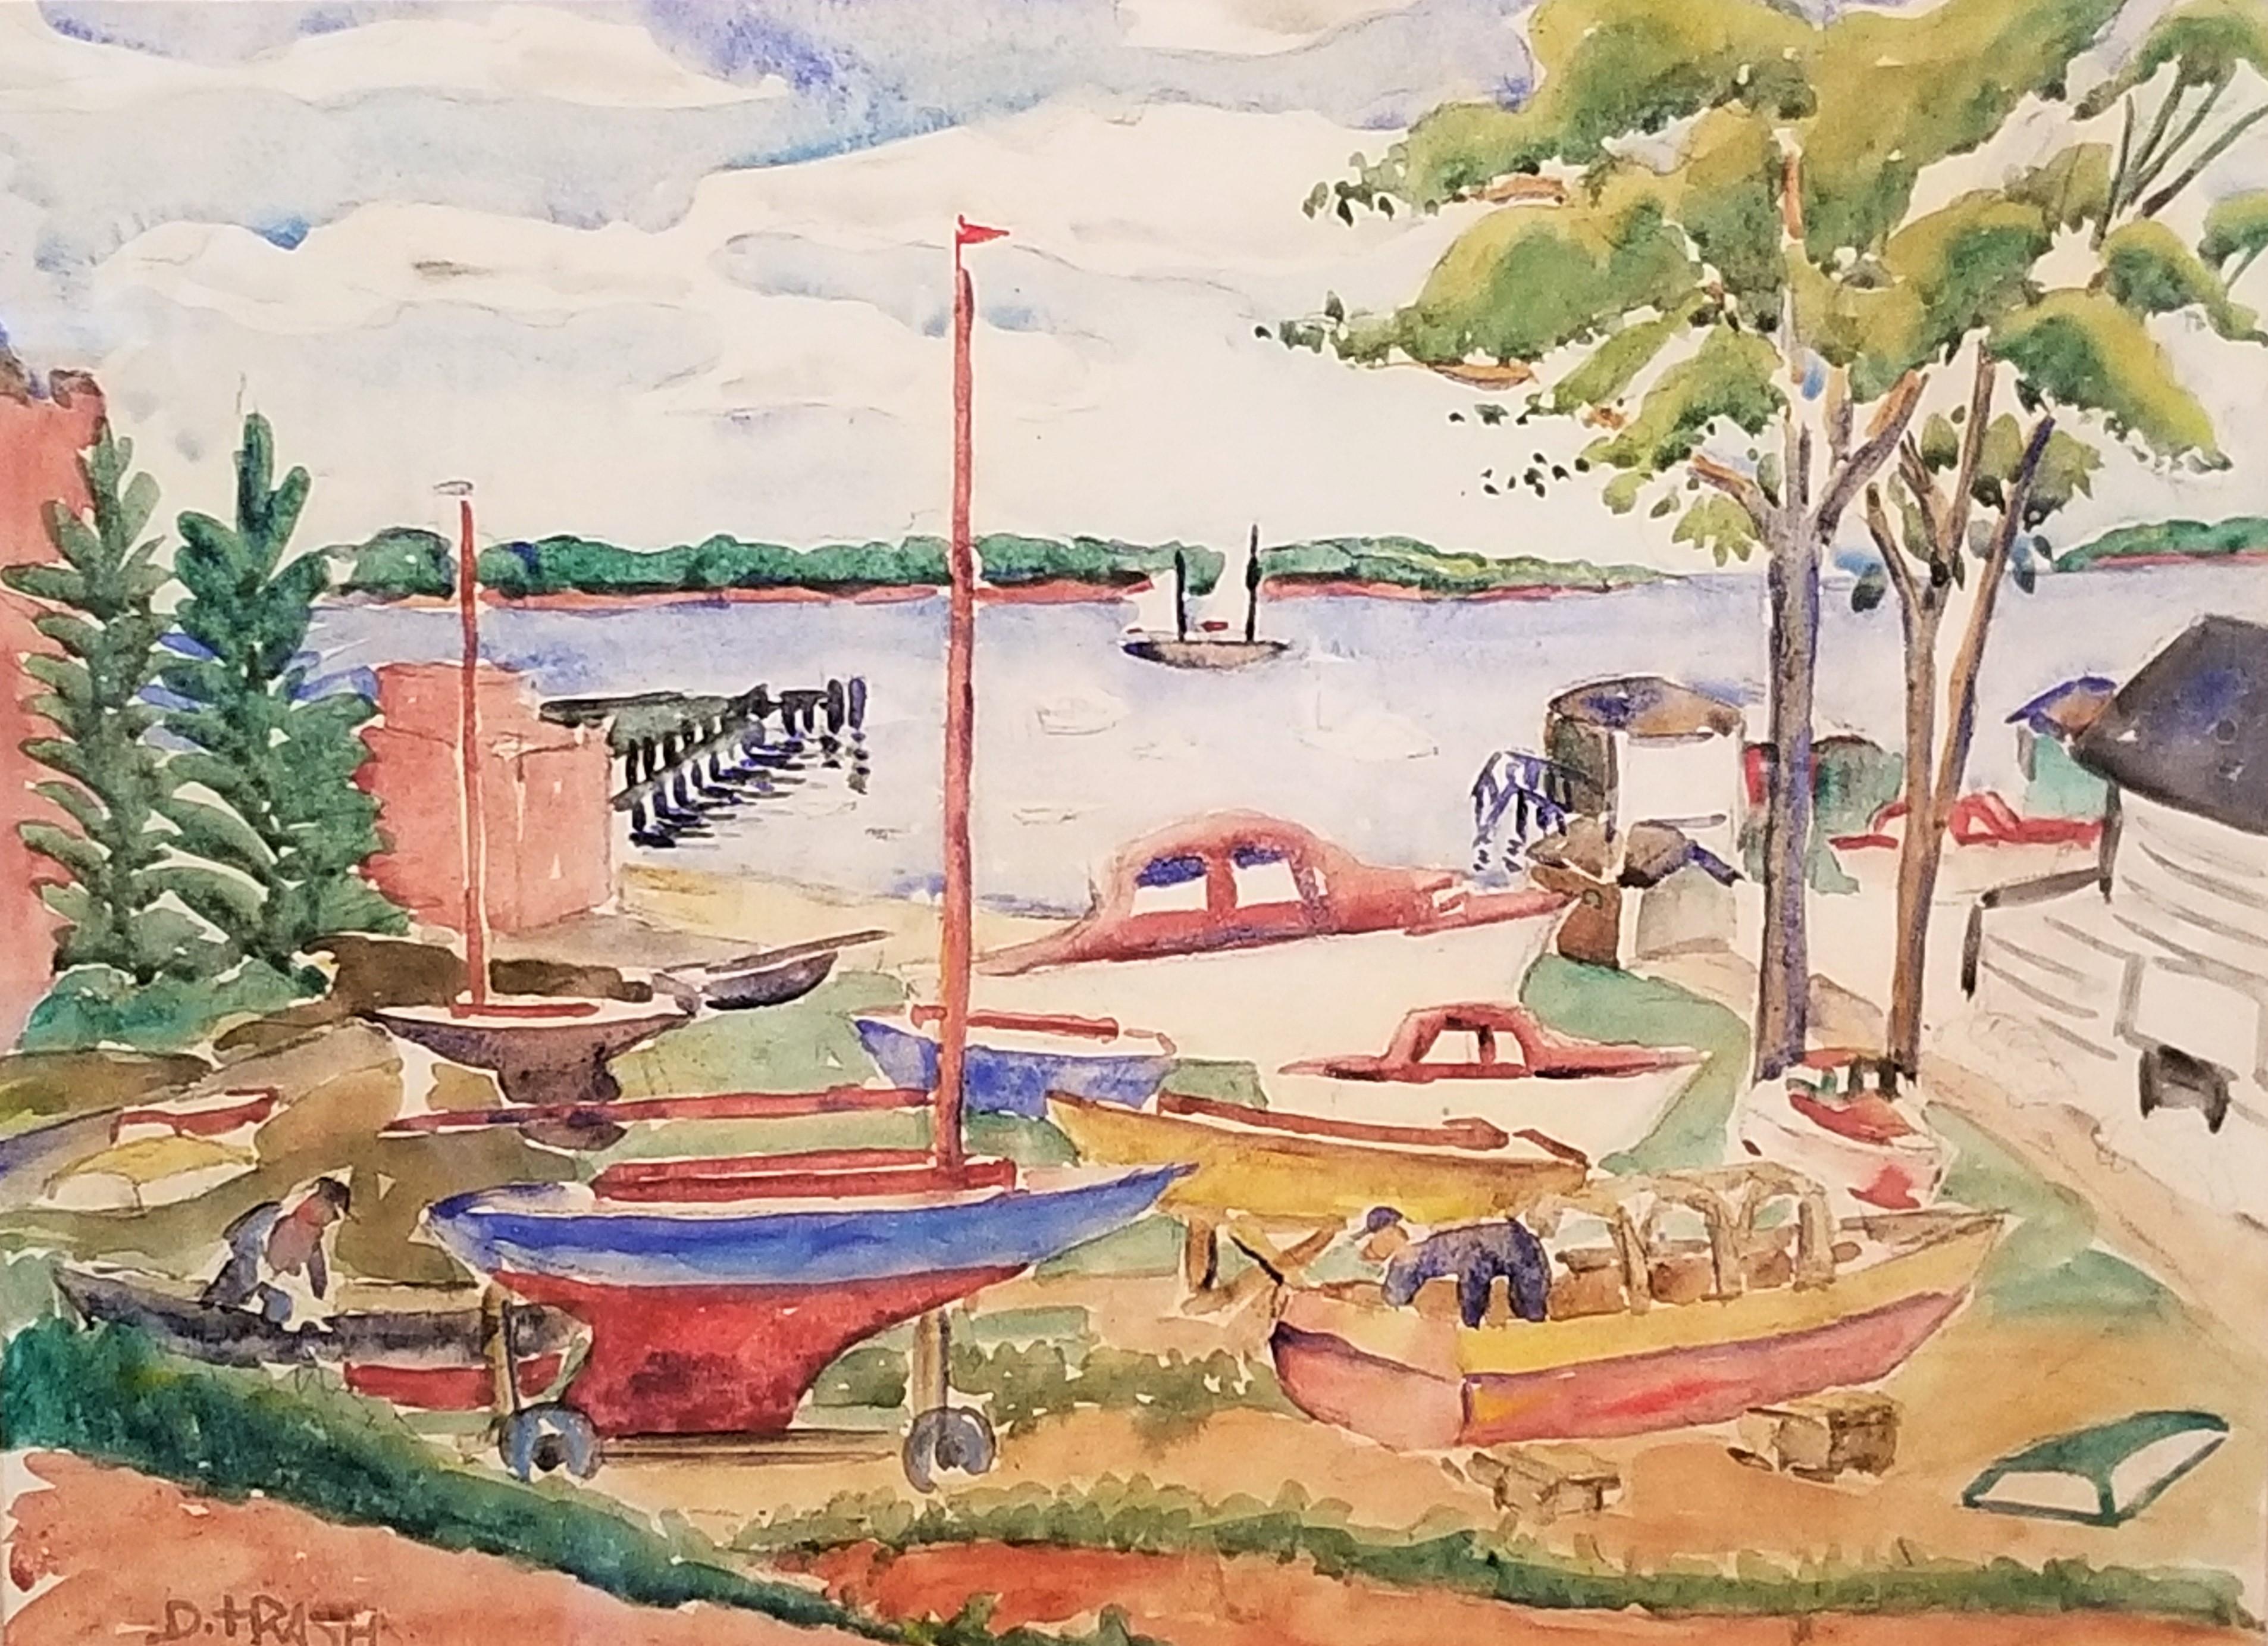 Boatyard - Painting by Dox Thrash